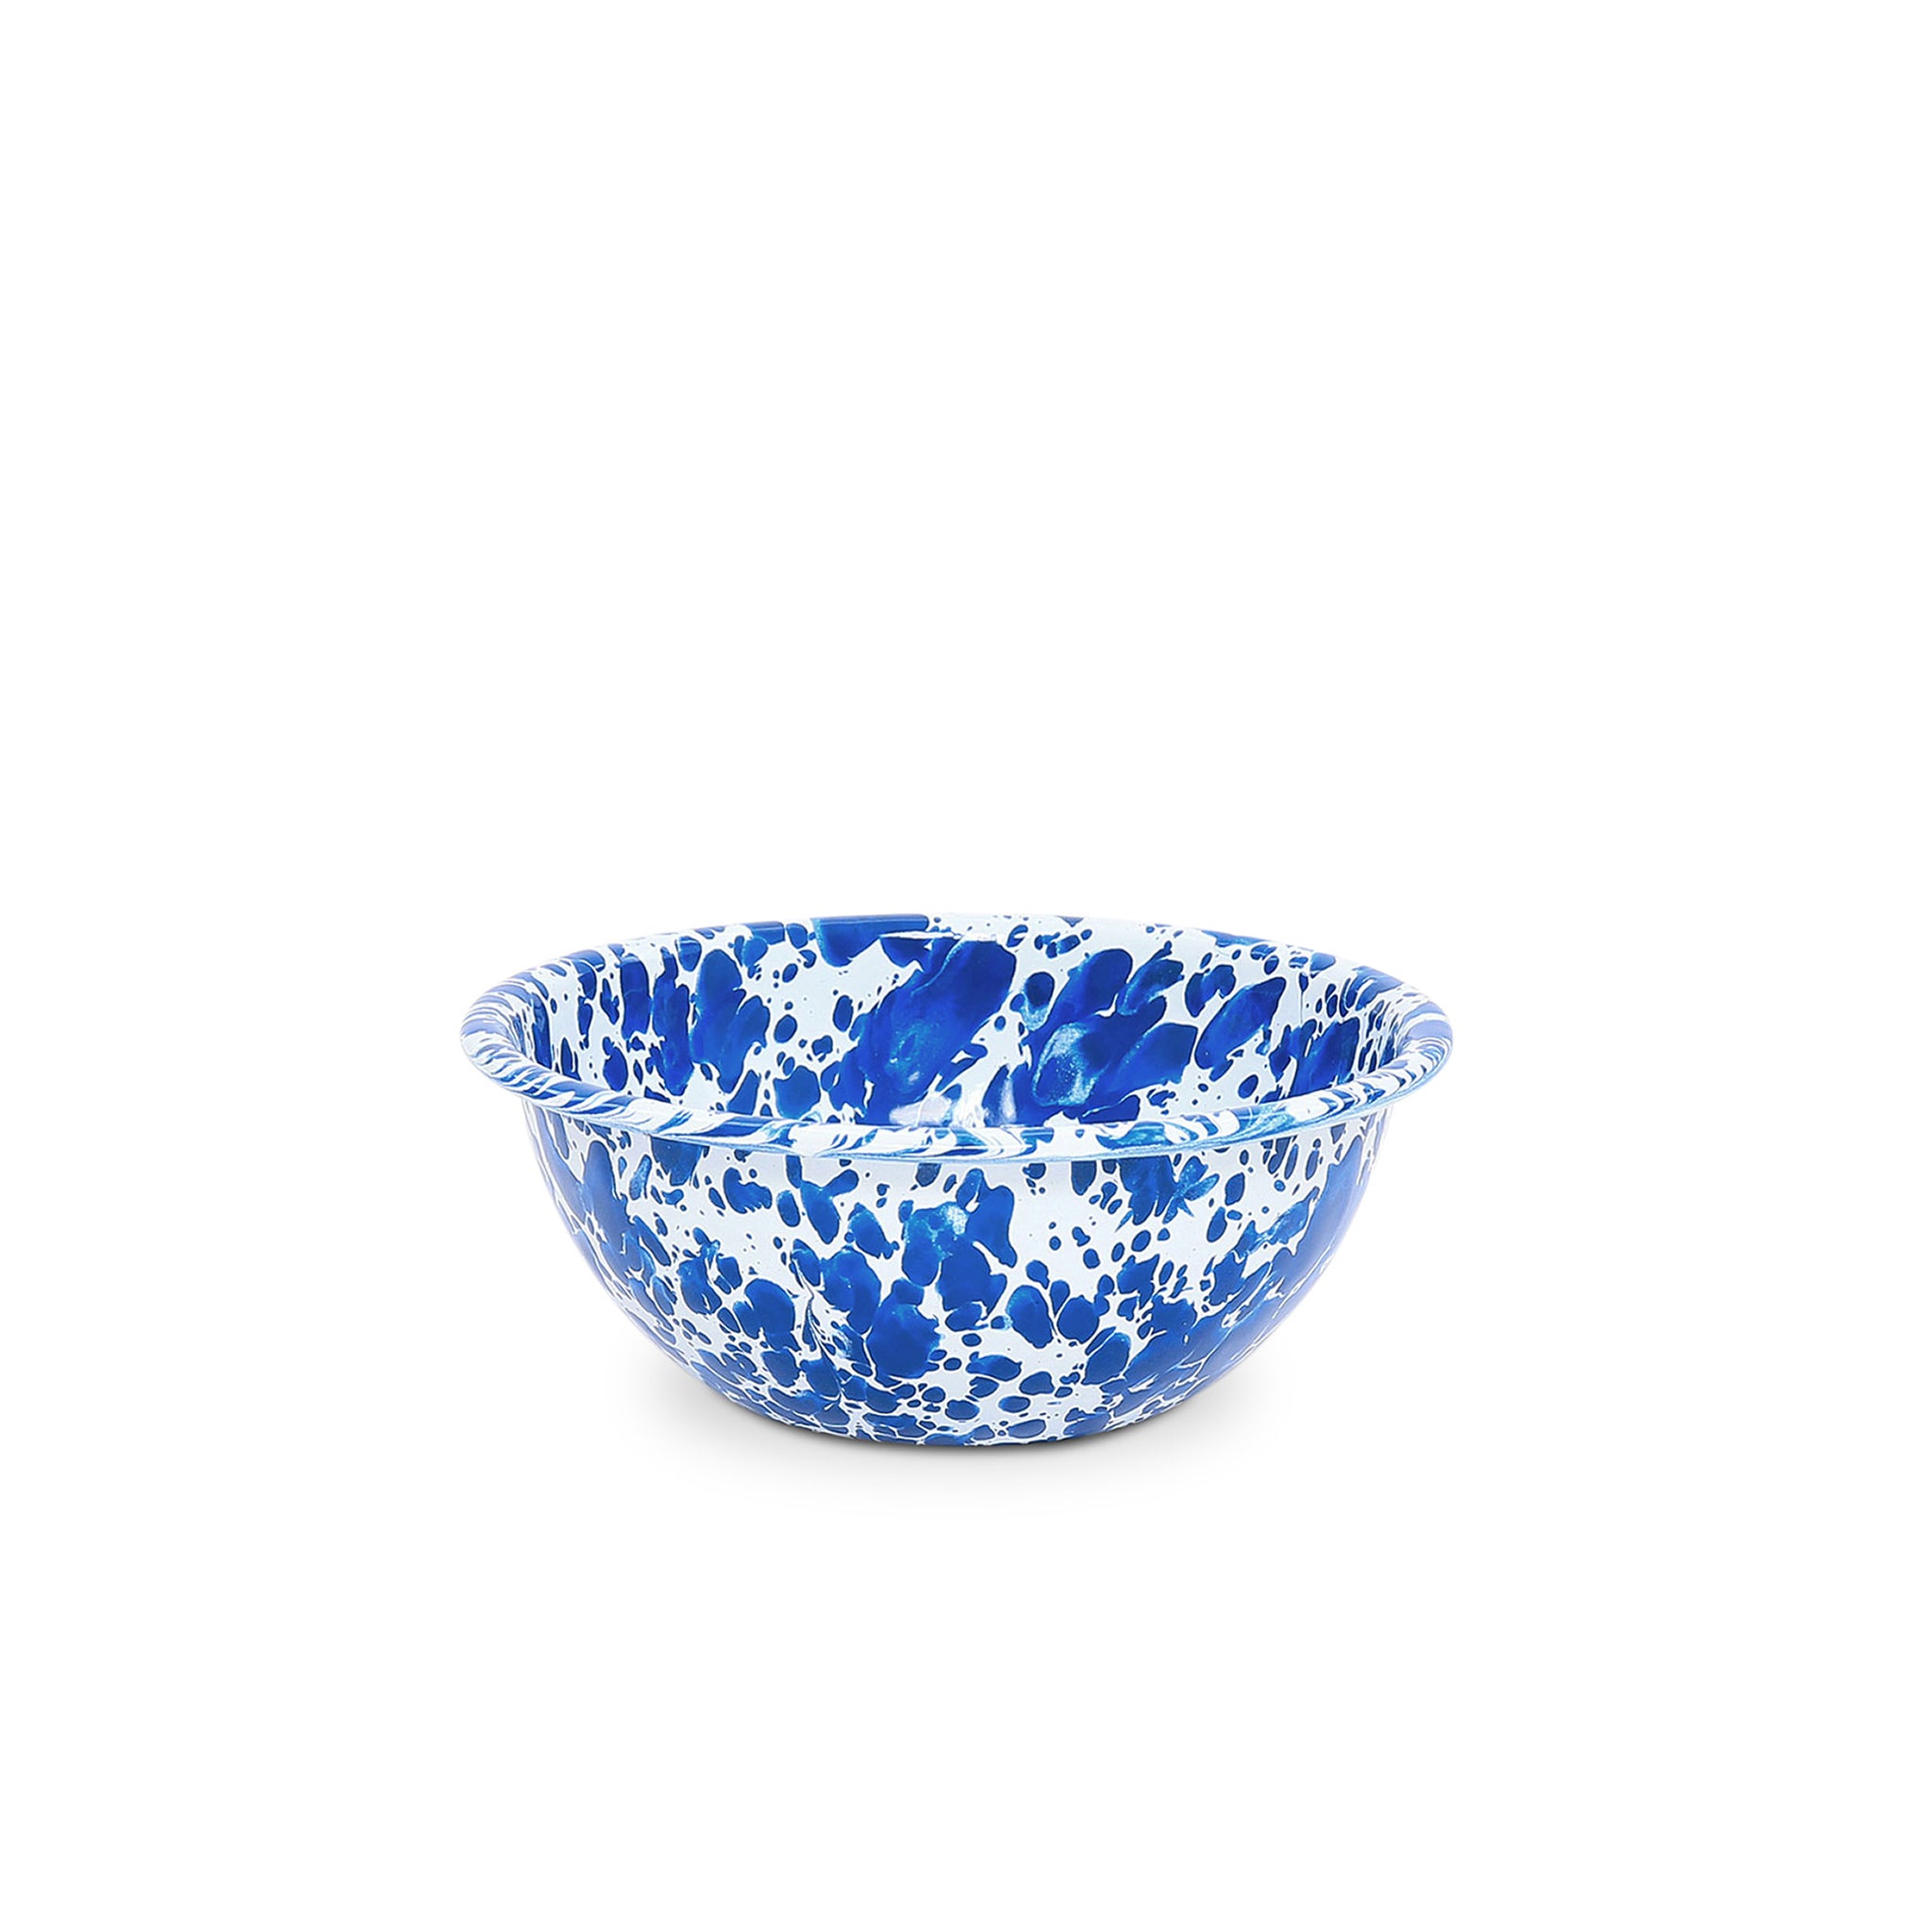 Splatter Cereal Bowl - Blue